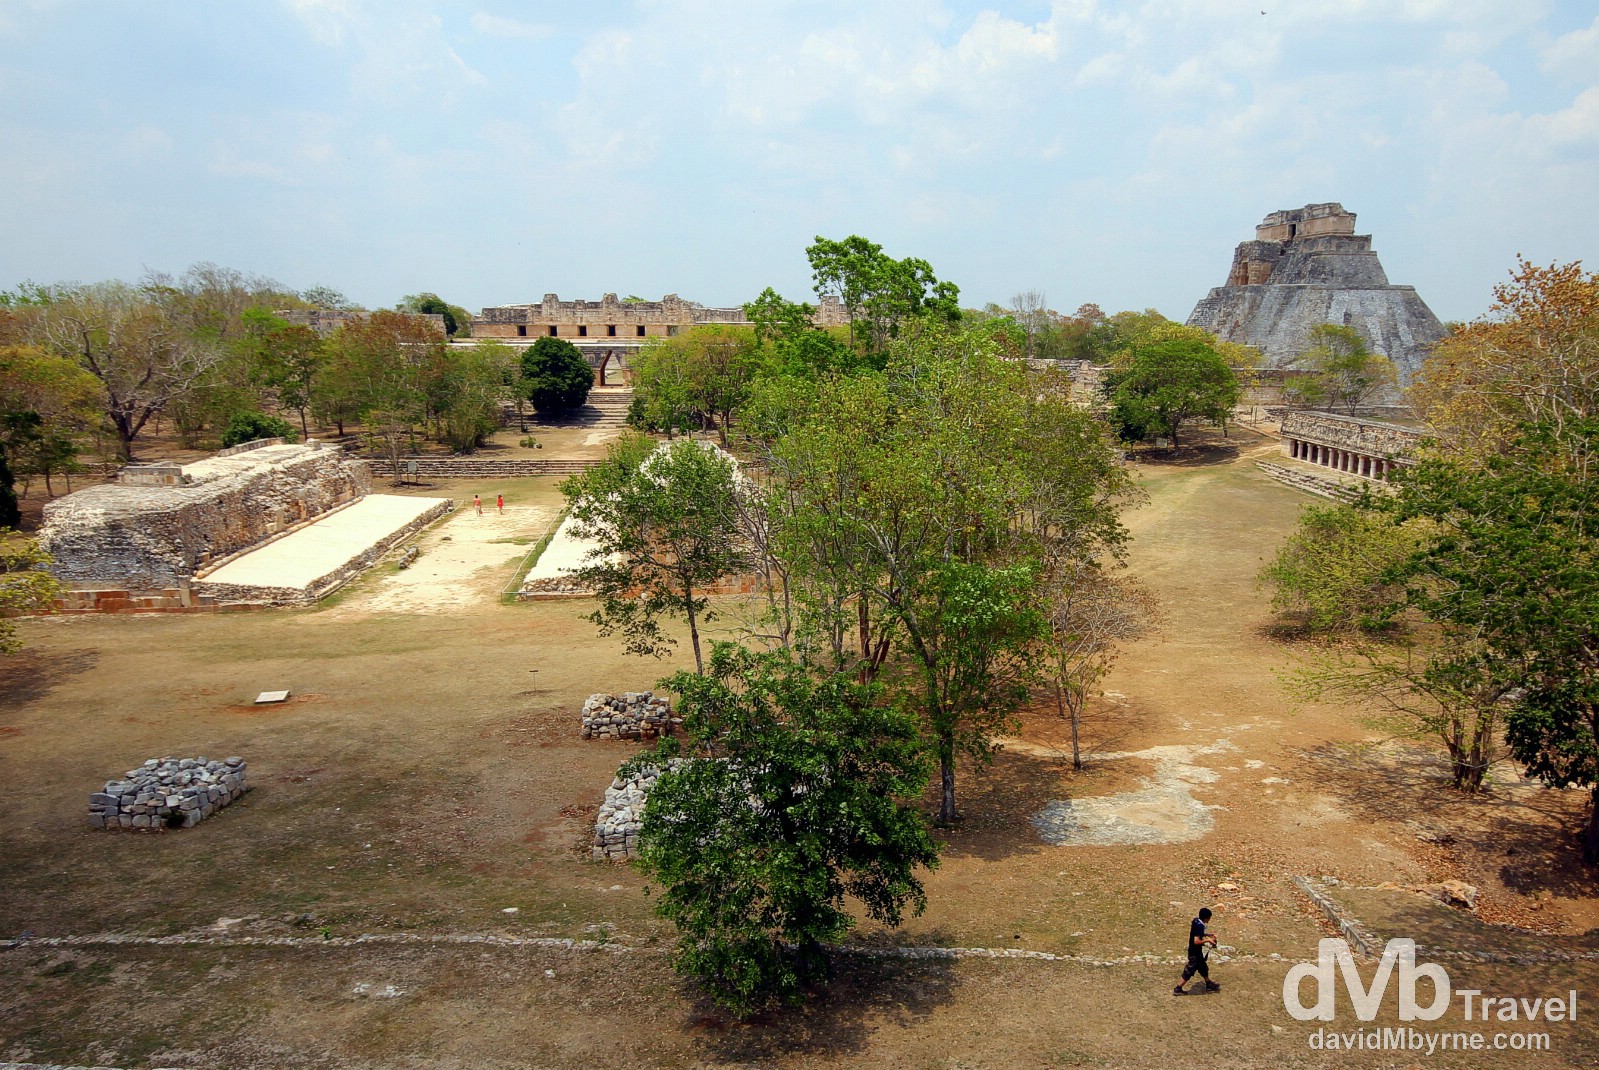 Uxmal Mayan ruins, Yucatan Peninsula, Mexico. May 2nd 2013.